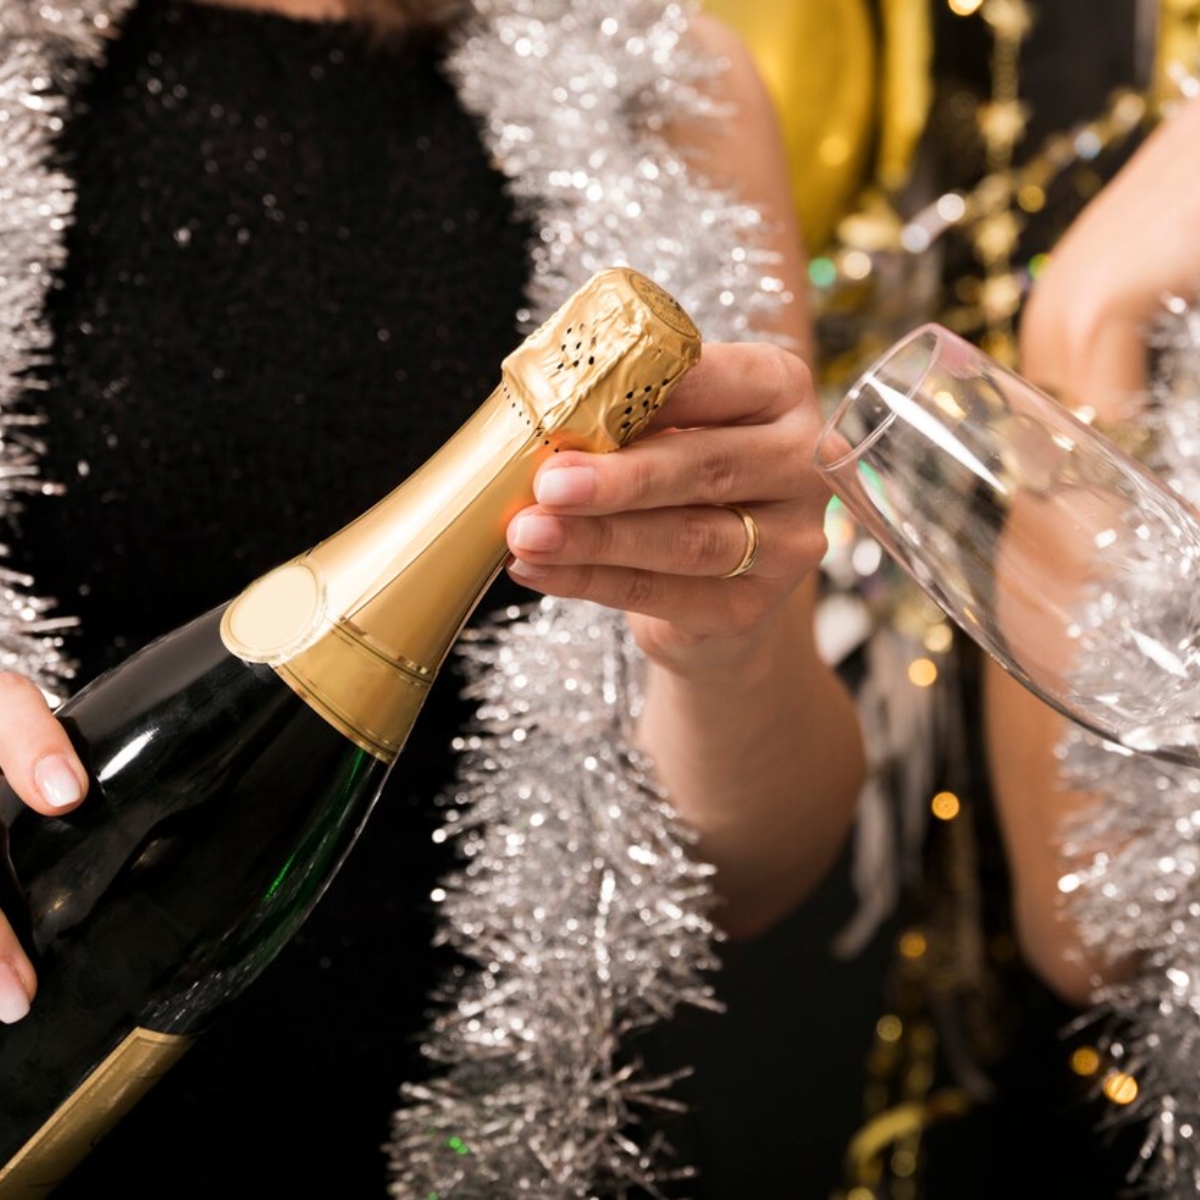 Шампанское открыла слушать. Девушка с бокалом шампанского. Девушка с шампанским новый год. Бокал шампанского в руке девушки. Новогоднее шампанское в руке.